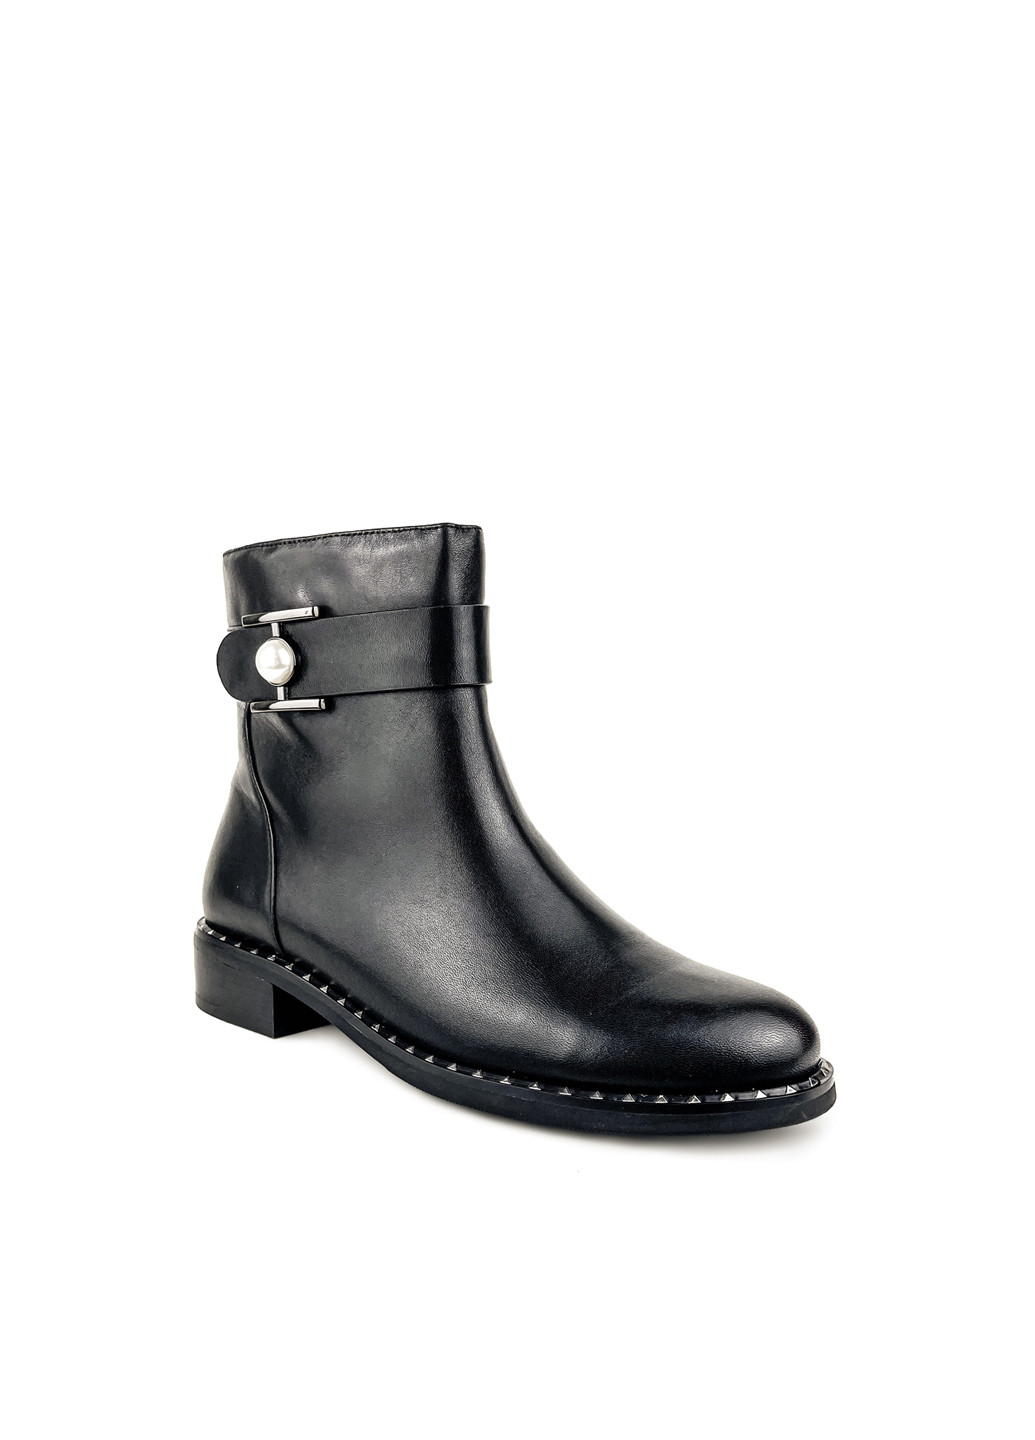 Осенние ботинки демисезонные женские черные на небольшом каблуке Brocoli